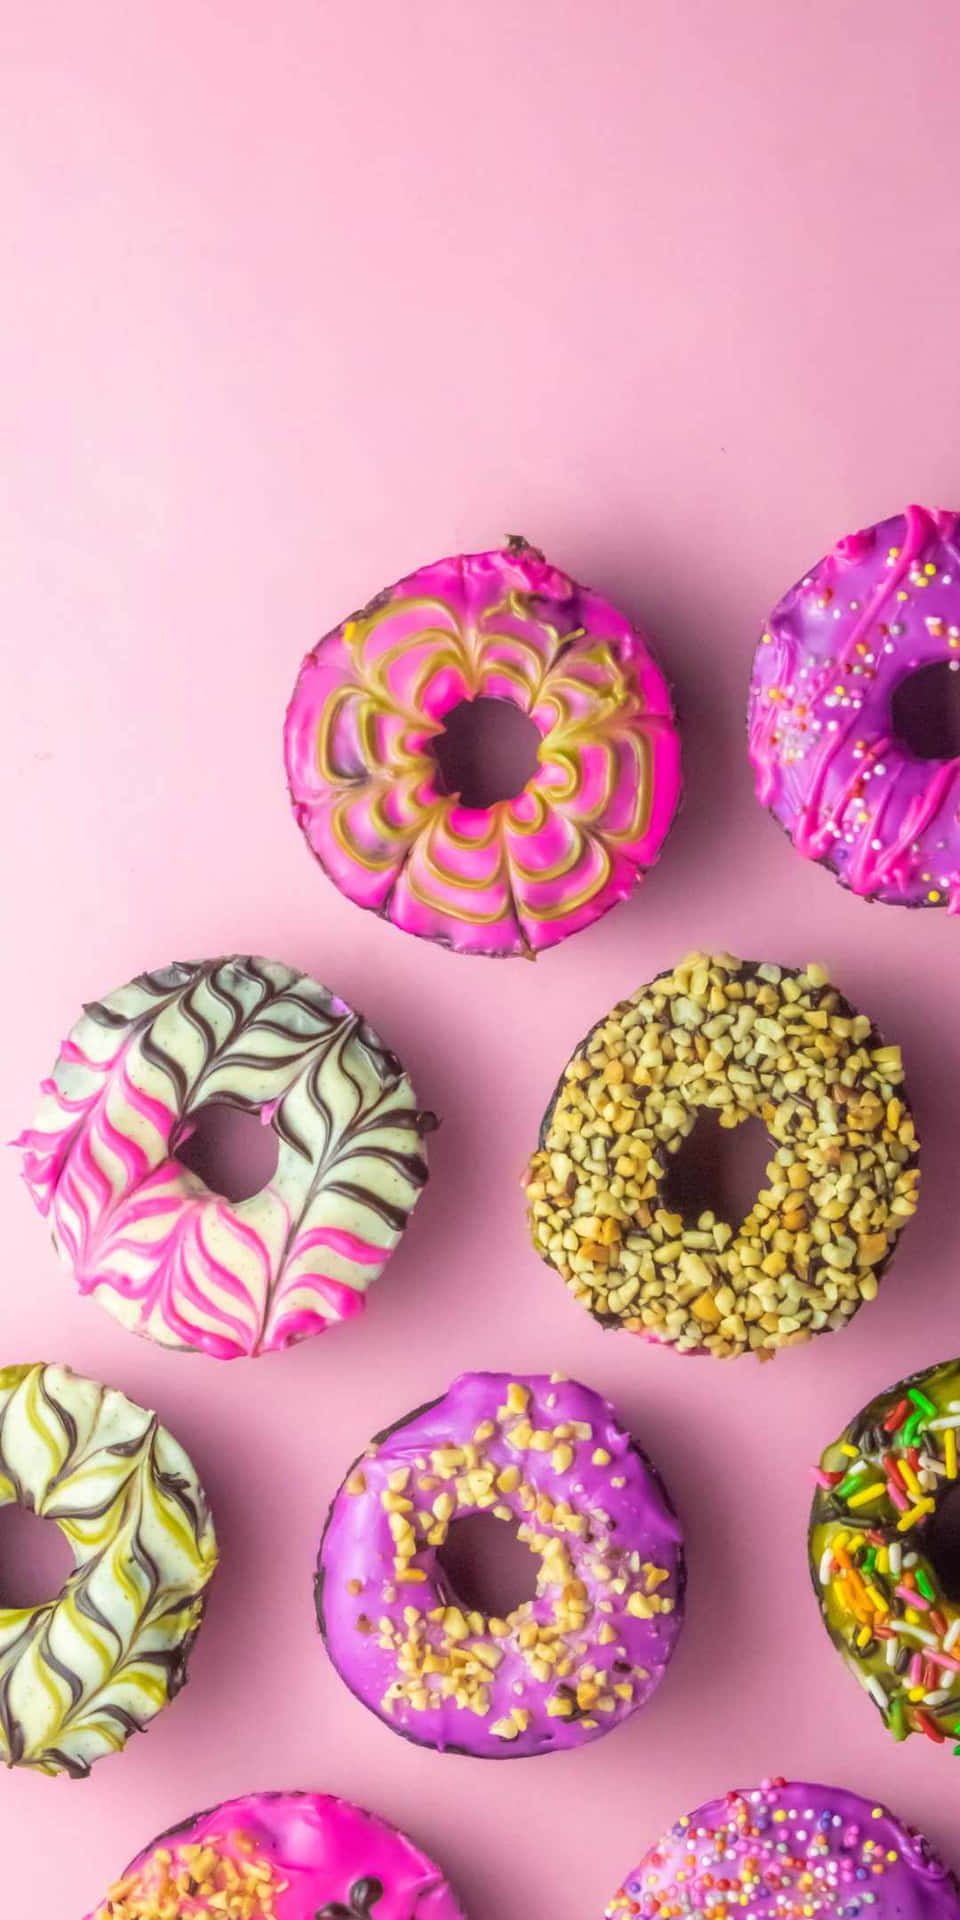 Fondode Pantalla De Pixel 3 Con Pasteles Creativos De Donut.